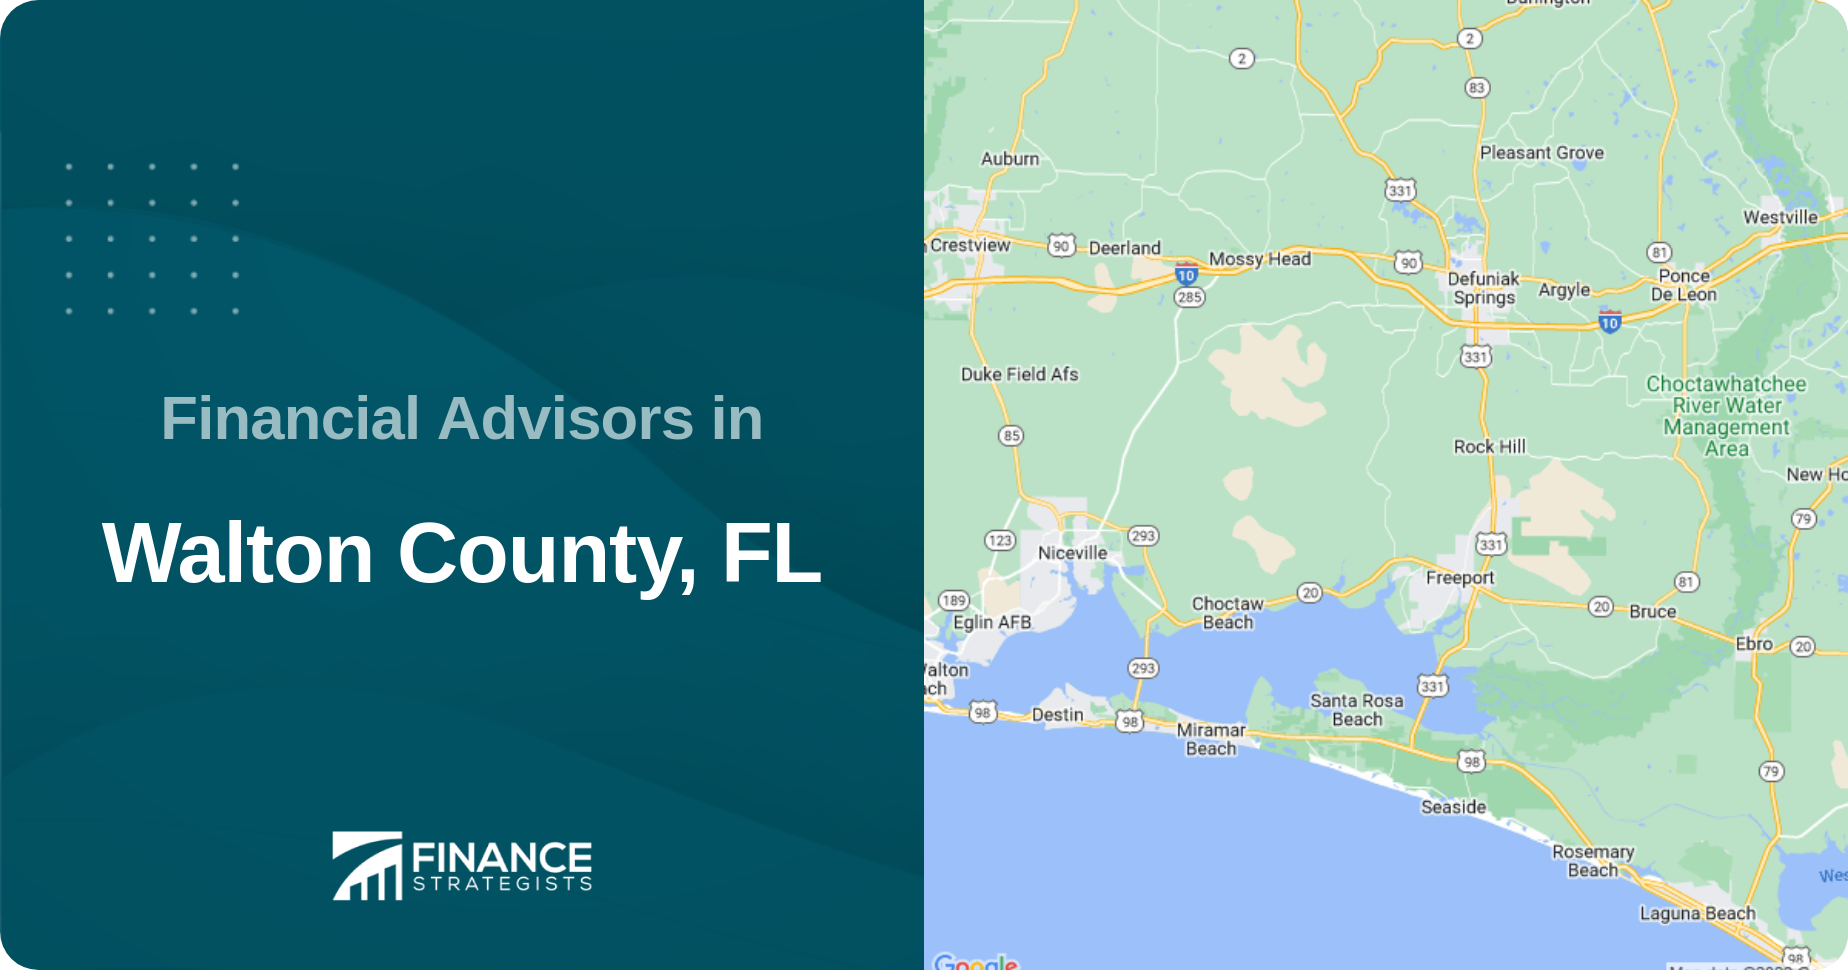 Financial Advisors in Walton County, FL